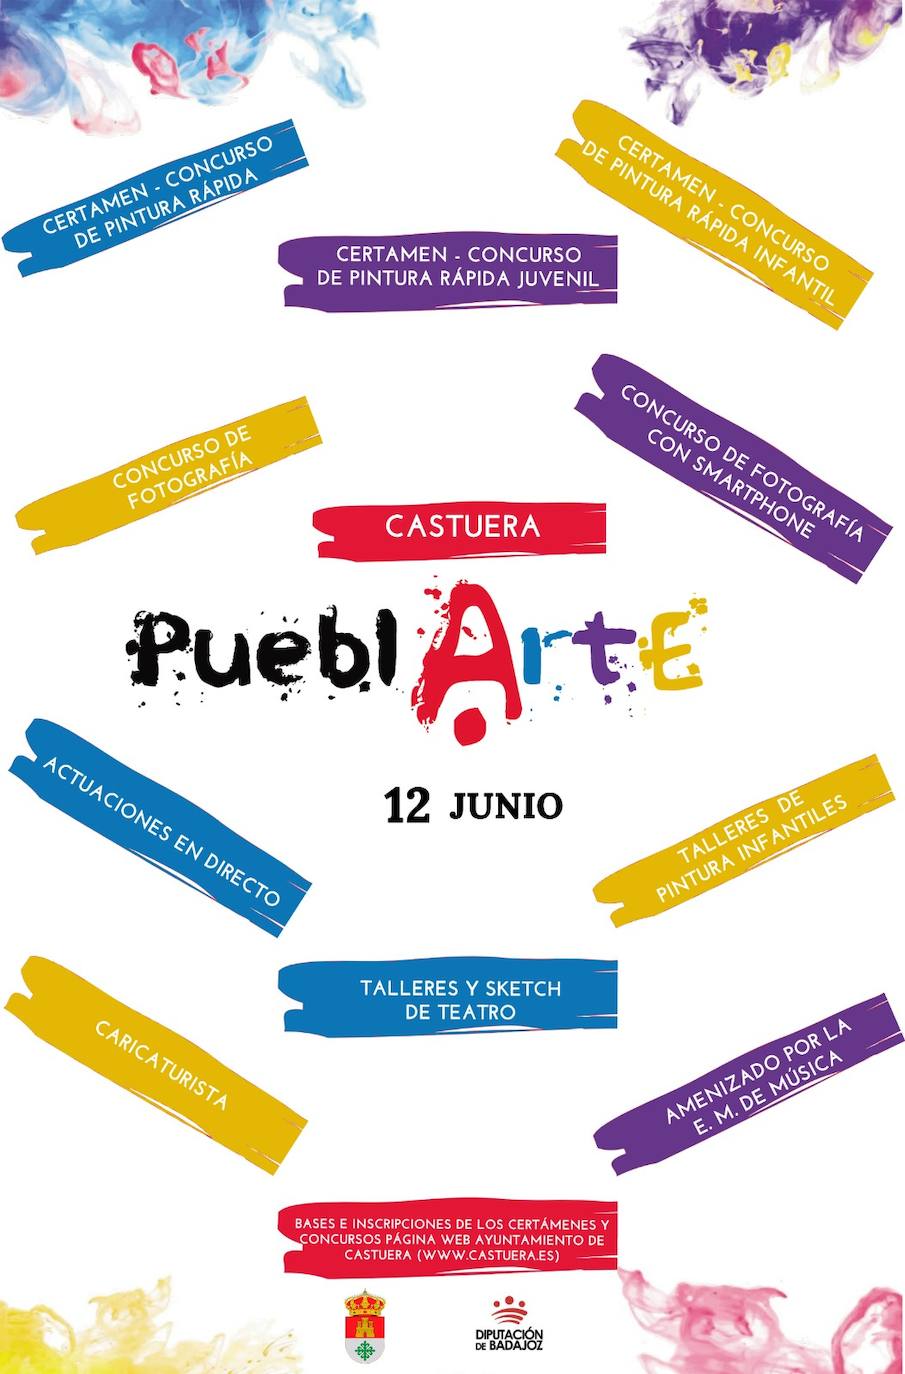 El programa 'Pueblarte' de la Diputación de Badajoz recalará en Castuera el sábado 12 de junio